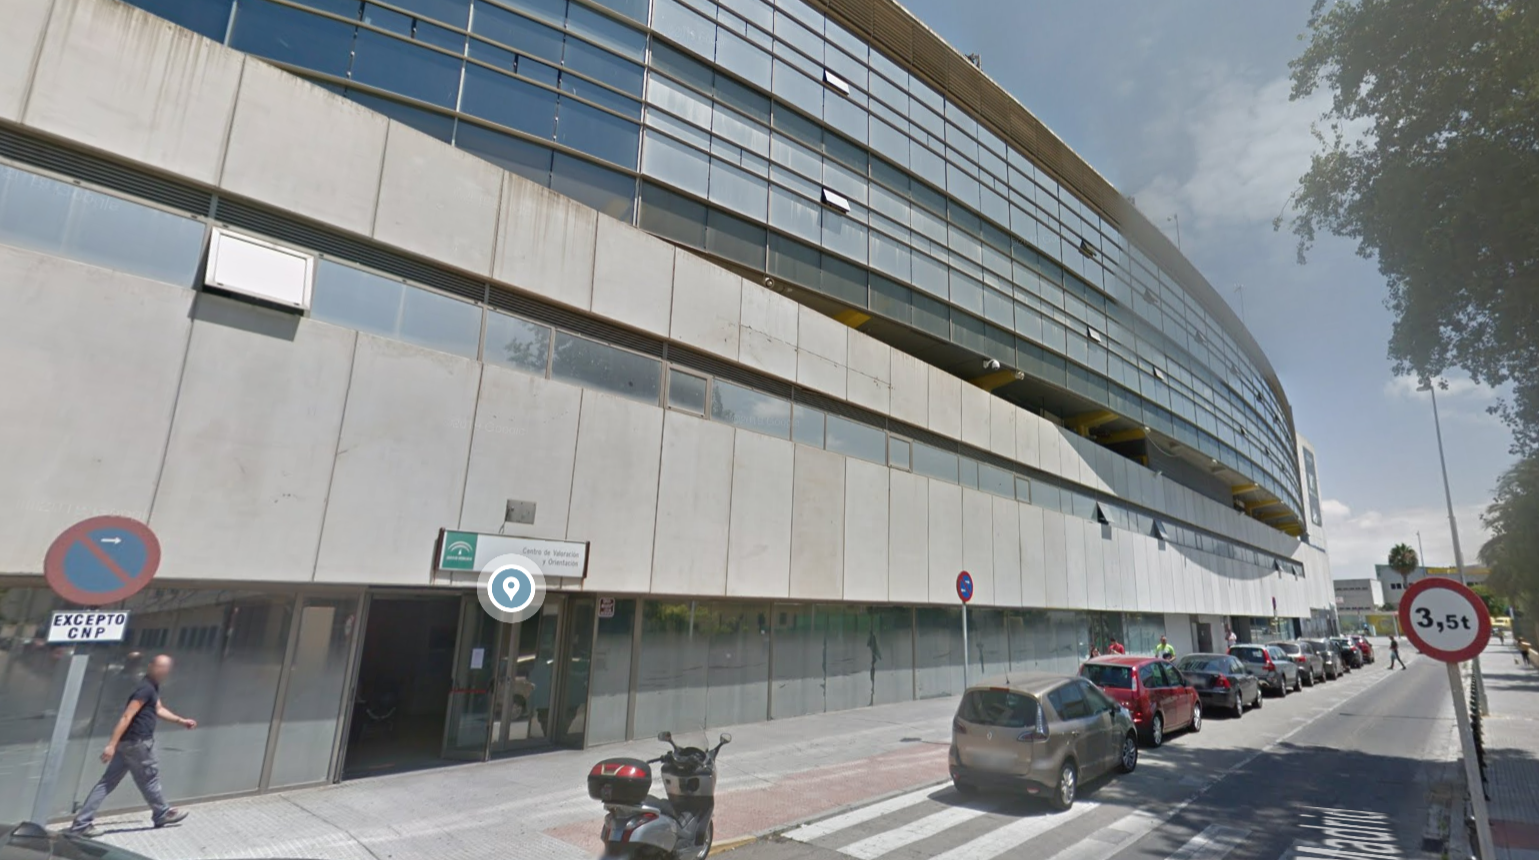 Juzgados de Cádiz, situados en el estadio Carranza, en una imagen de Google Maps.